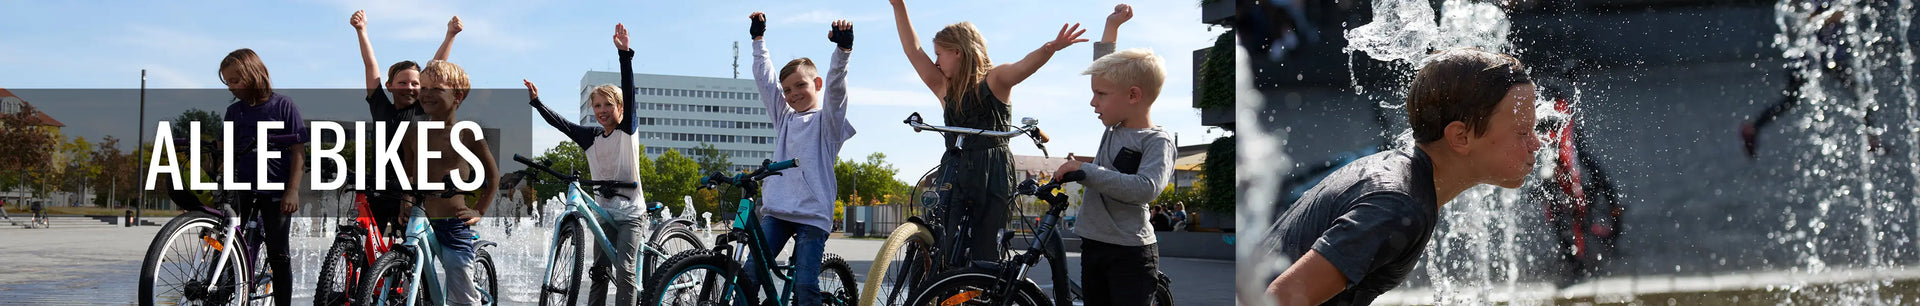 S'COOL Junior Bikes - Fahrräder für Kinder und Jugendliche